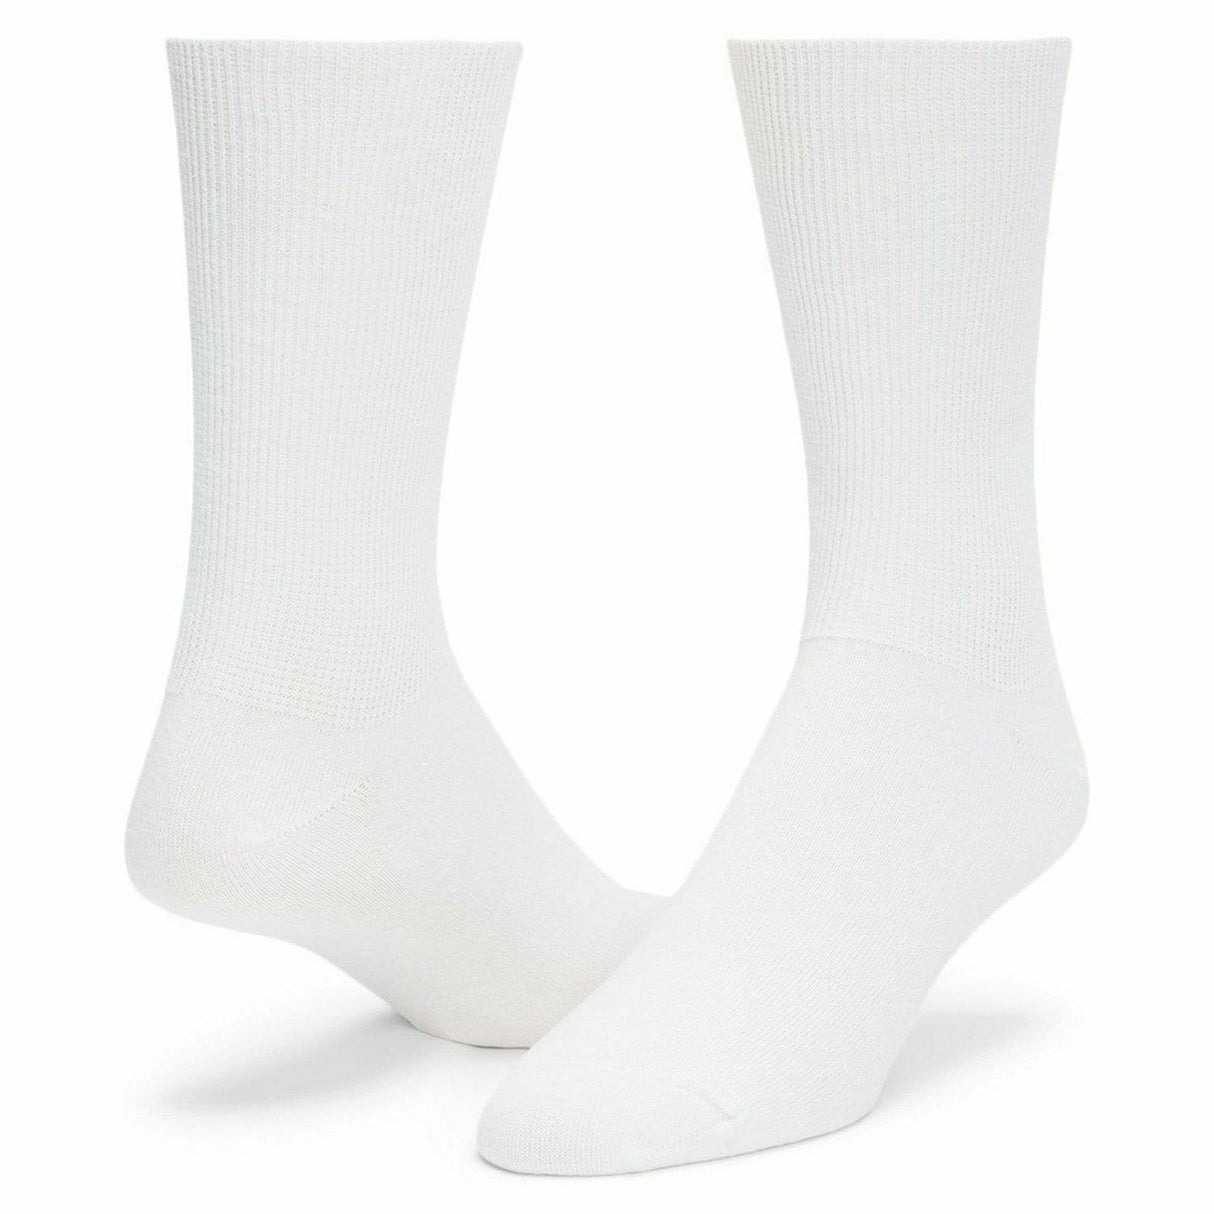 Wigwam Coolmax Liner Socks  -  Medium / White